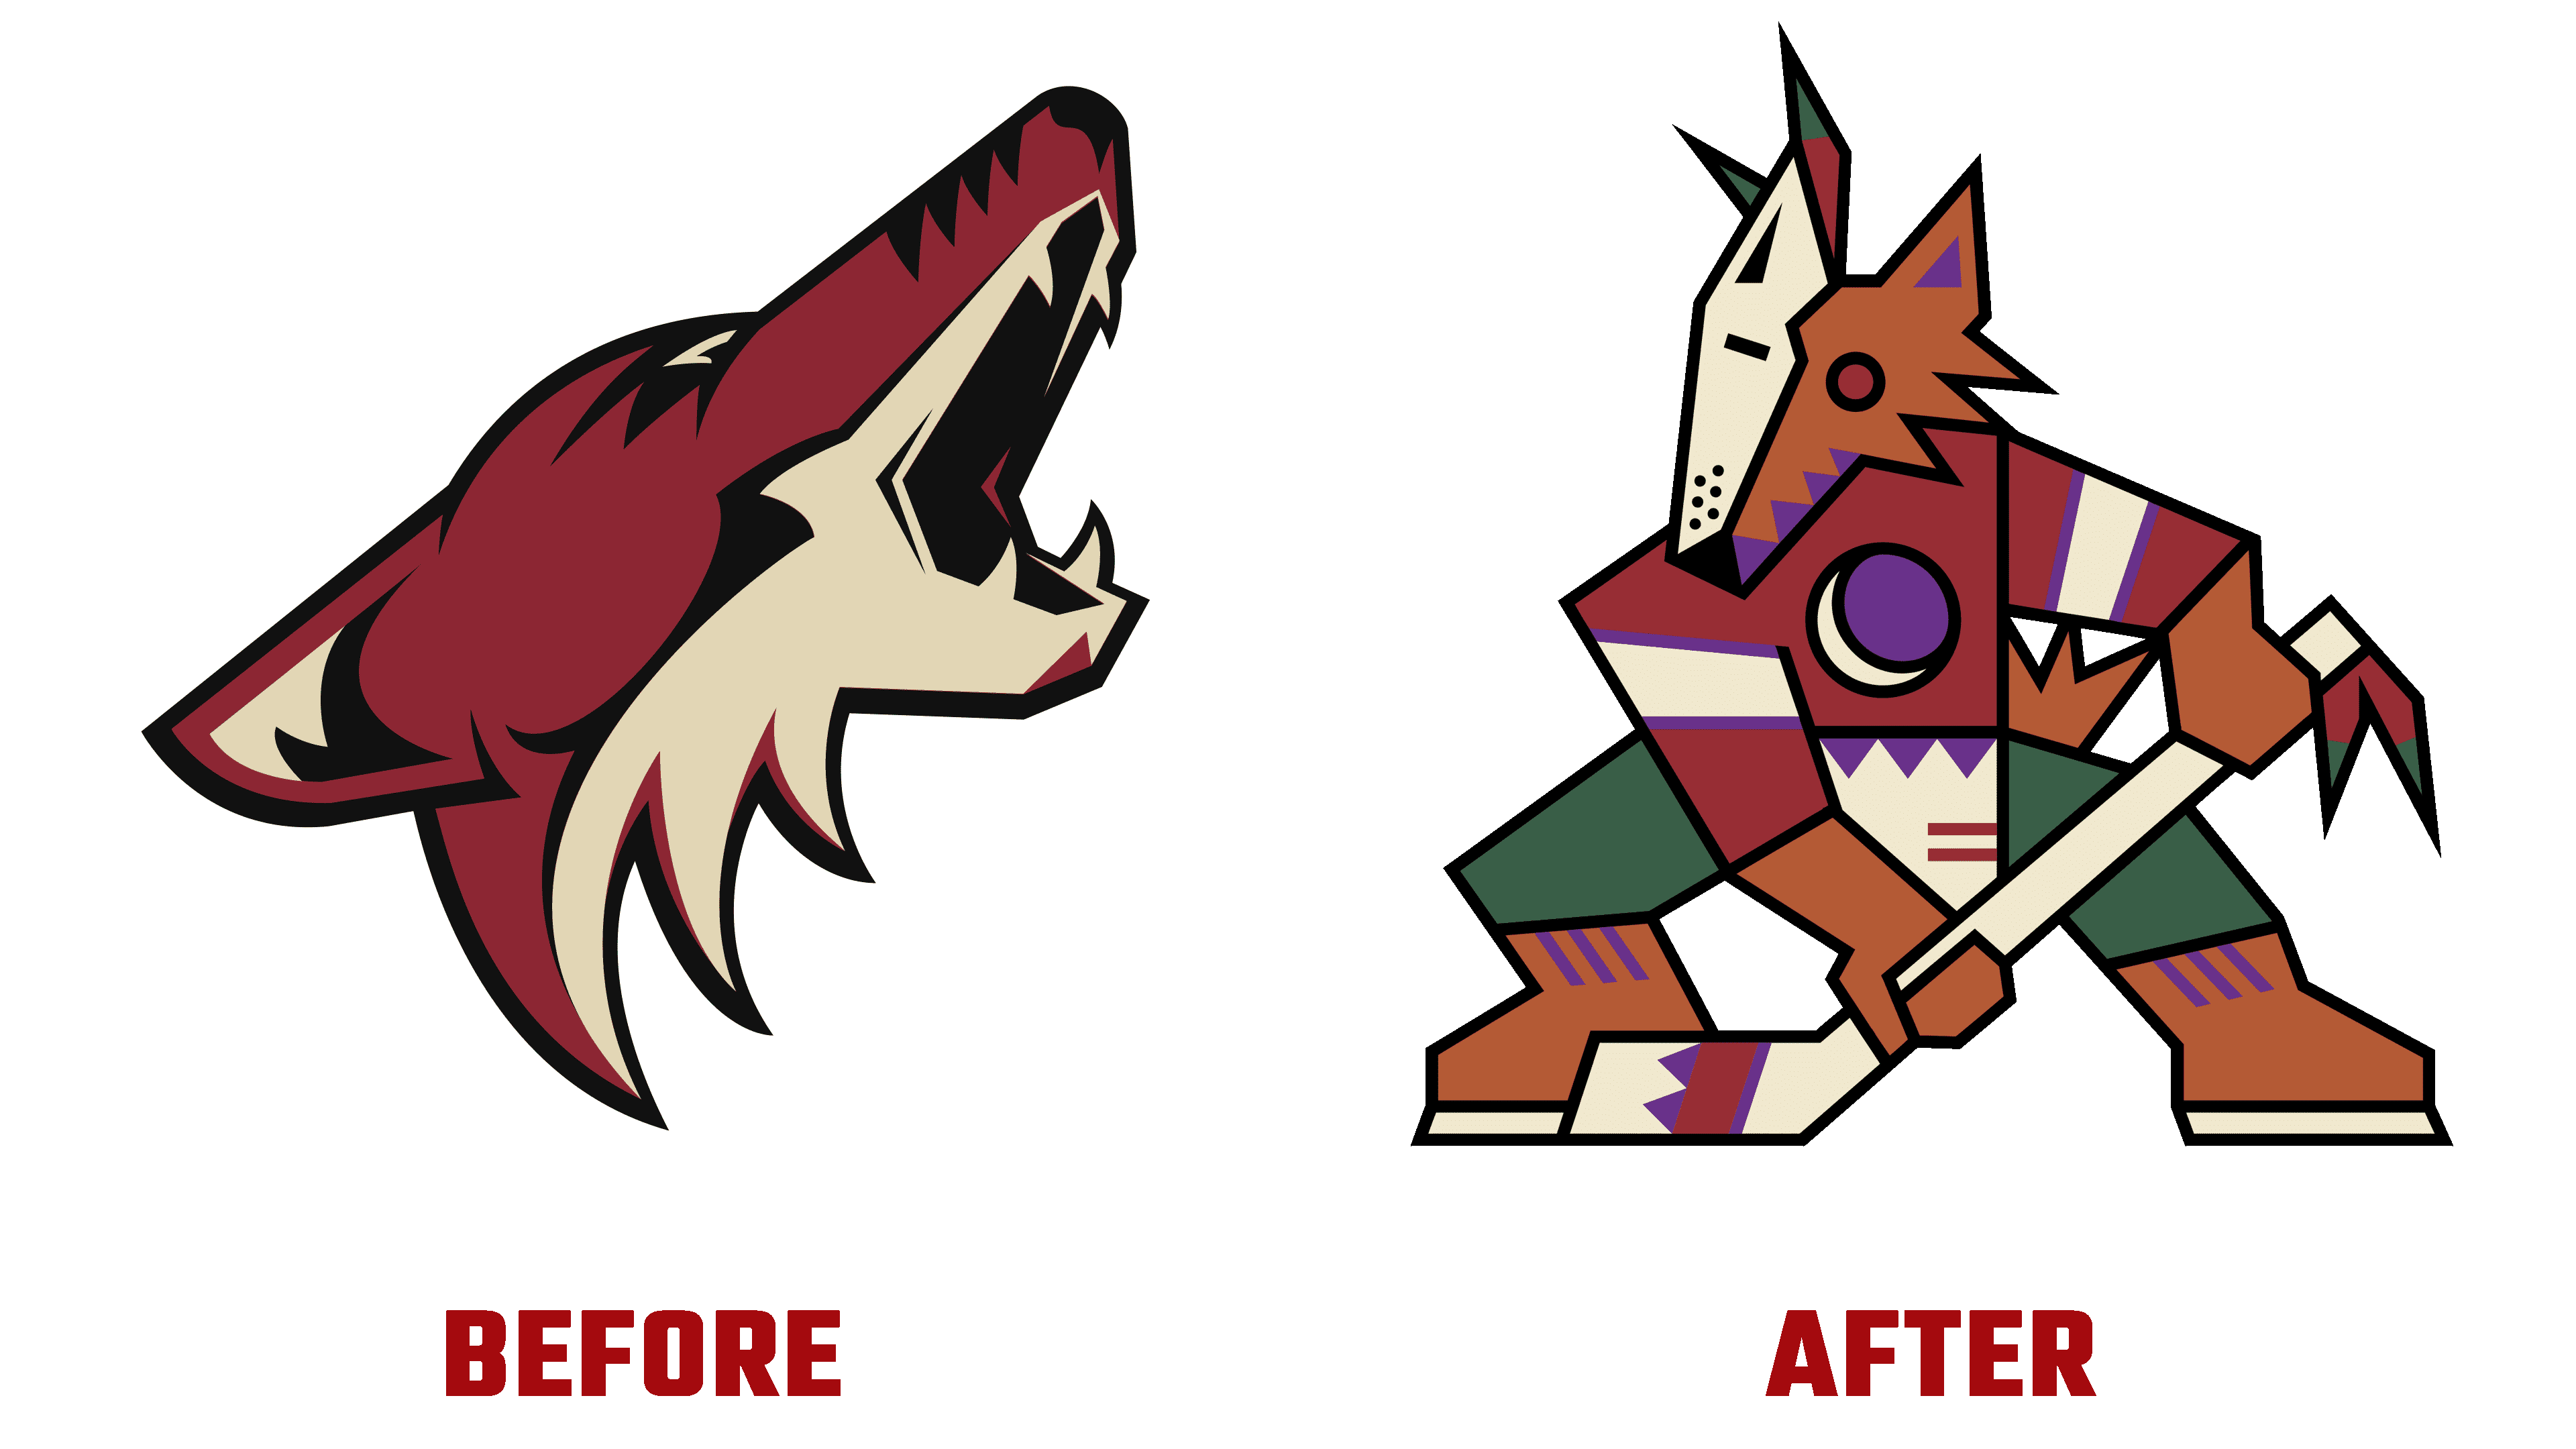 phoenix coyotes logo